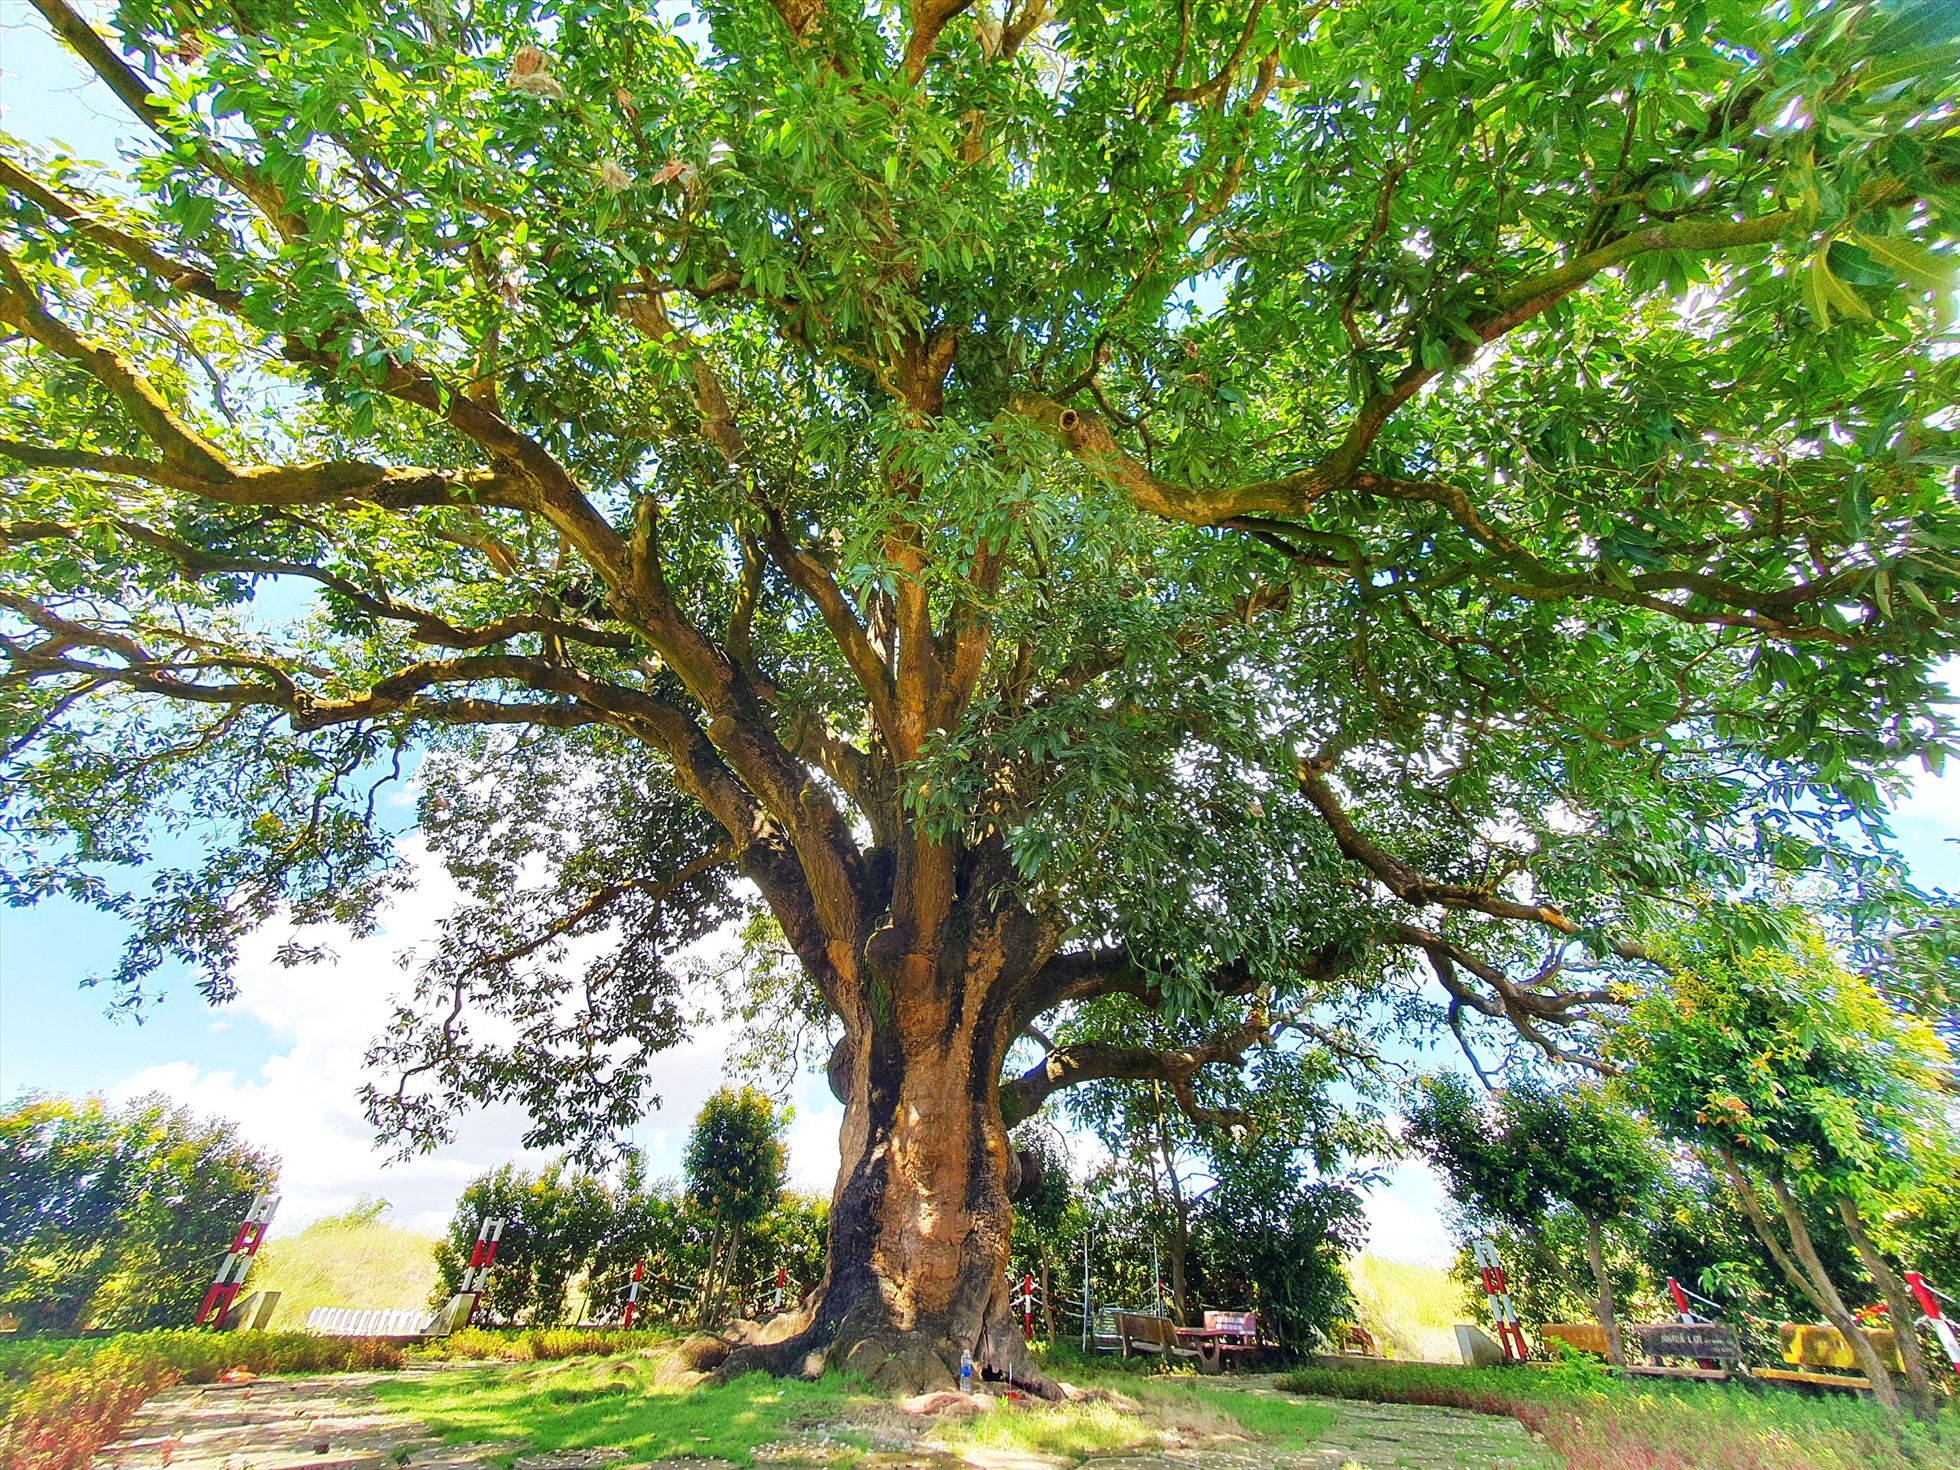 Ở Bạc Liêu có cây xoài cổ thụ hơn 340 năm tuổi lớn nhất vùng ĐBSCL vẫn sai trái, mỗi vụ thu hàng trăm kg - Ảnh 1.